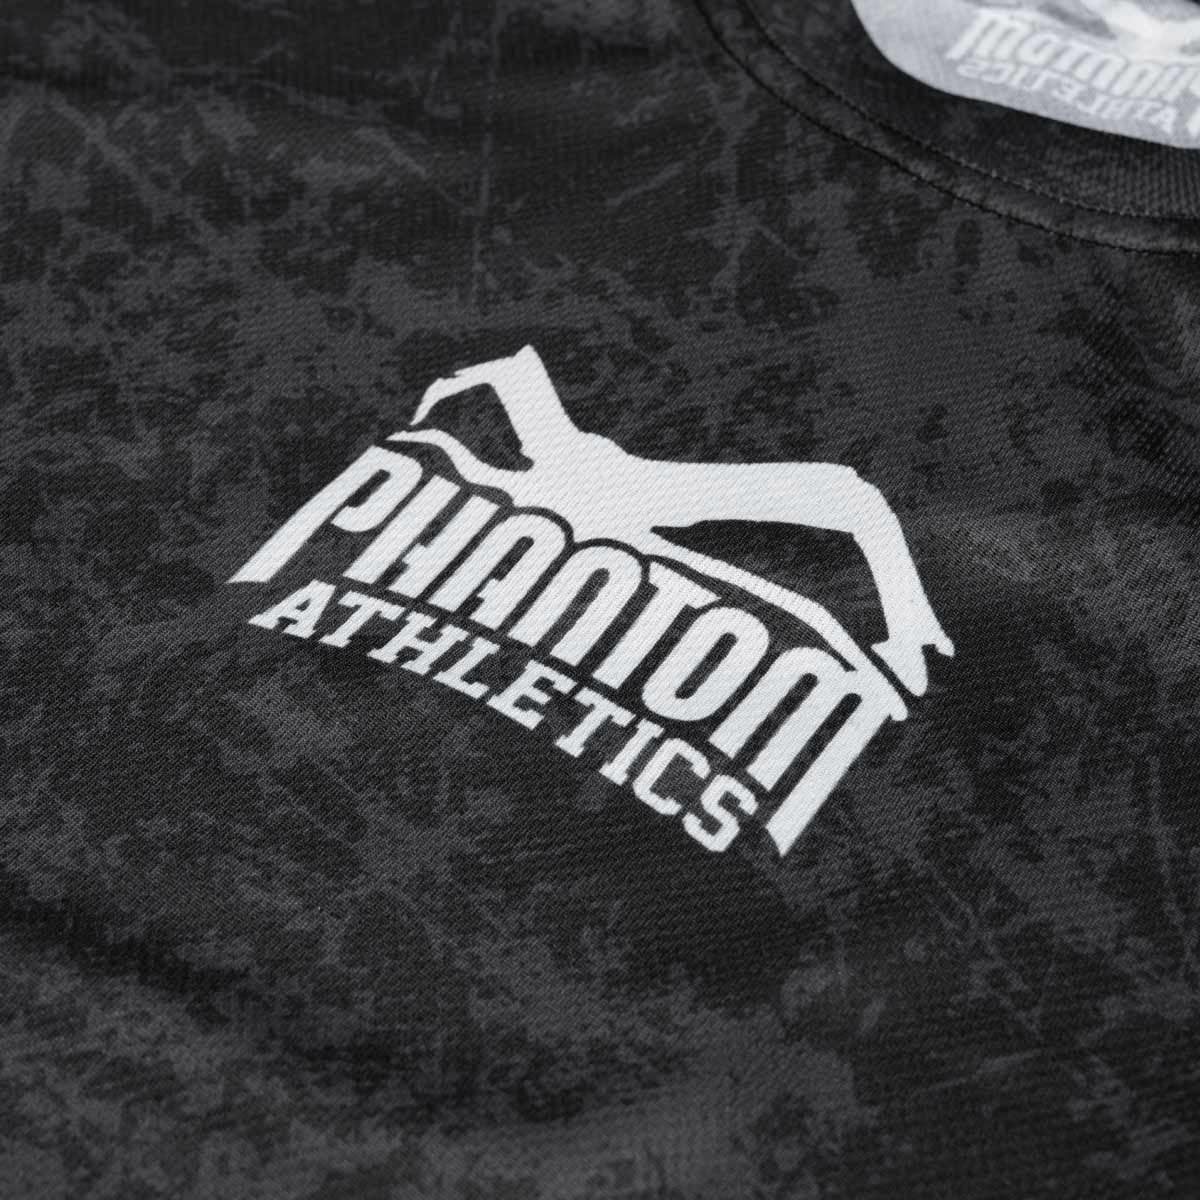 Phantom EVO Trainingsshirt für Kampfsport. Mit Smiley Serious Grafik am Rücken. Hochwertiger Sublimationsdruck für eine lange Lebensdauer im Kampfsporttraining. Ideal für MMA, BJJ oder Muay Thai.